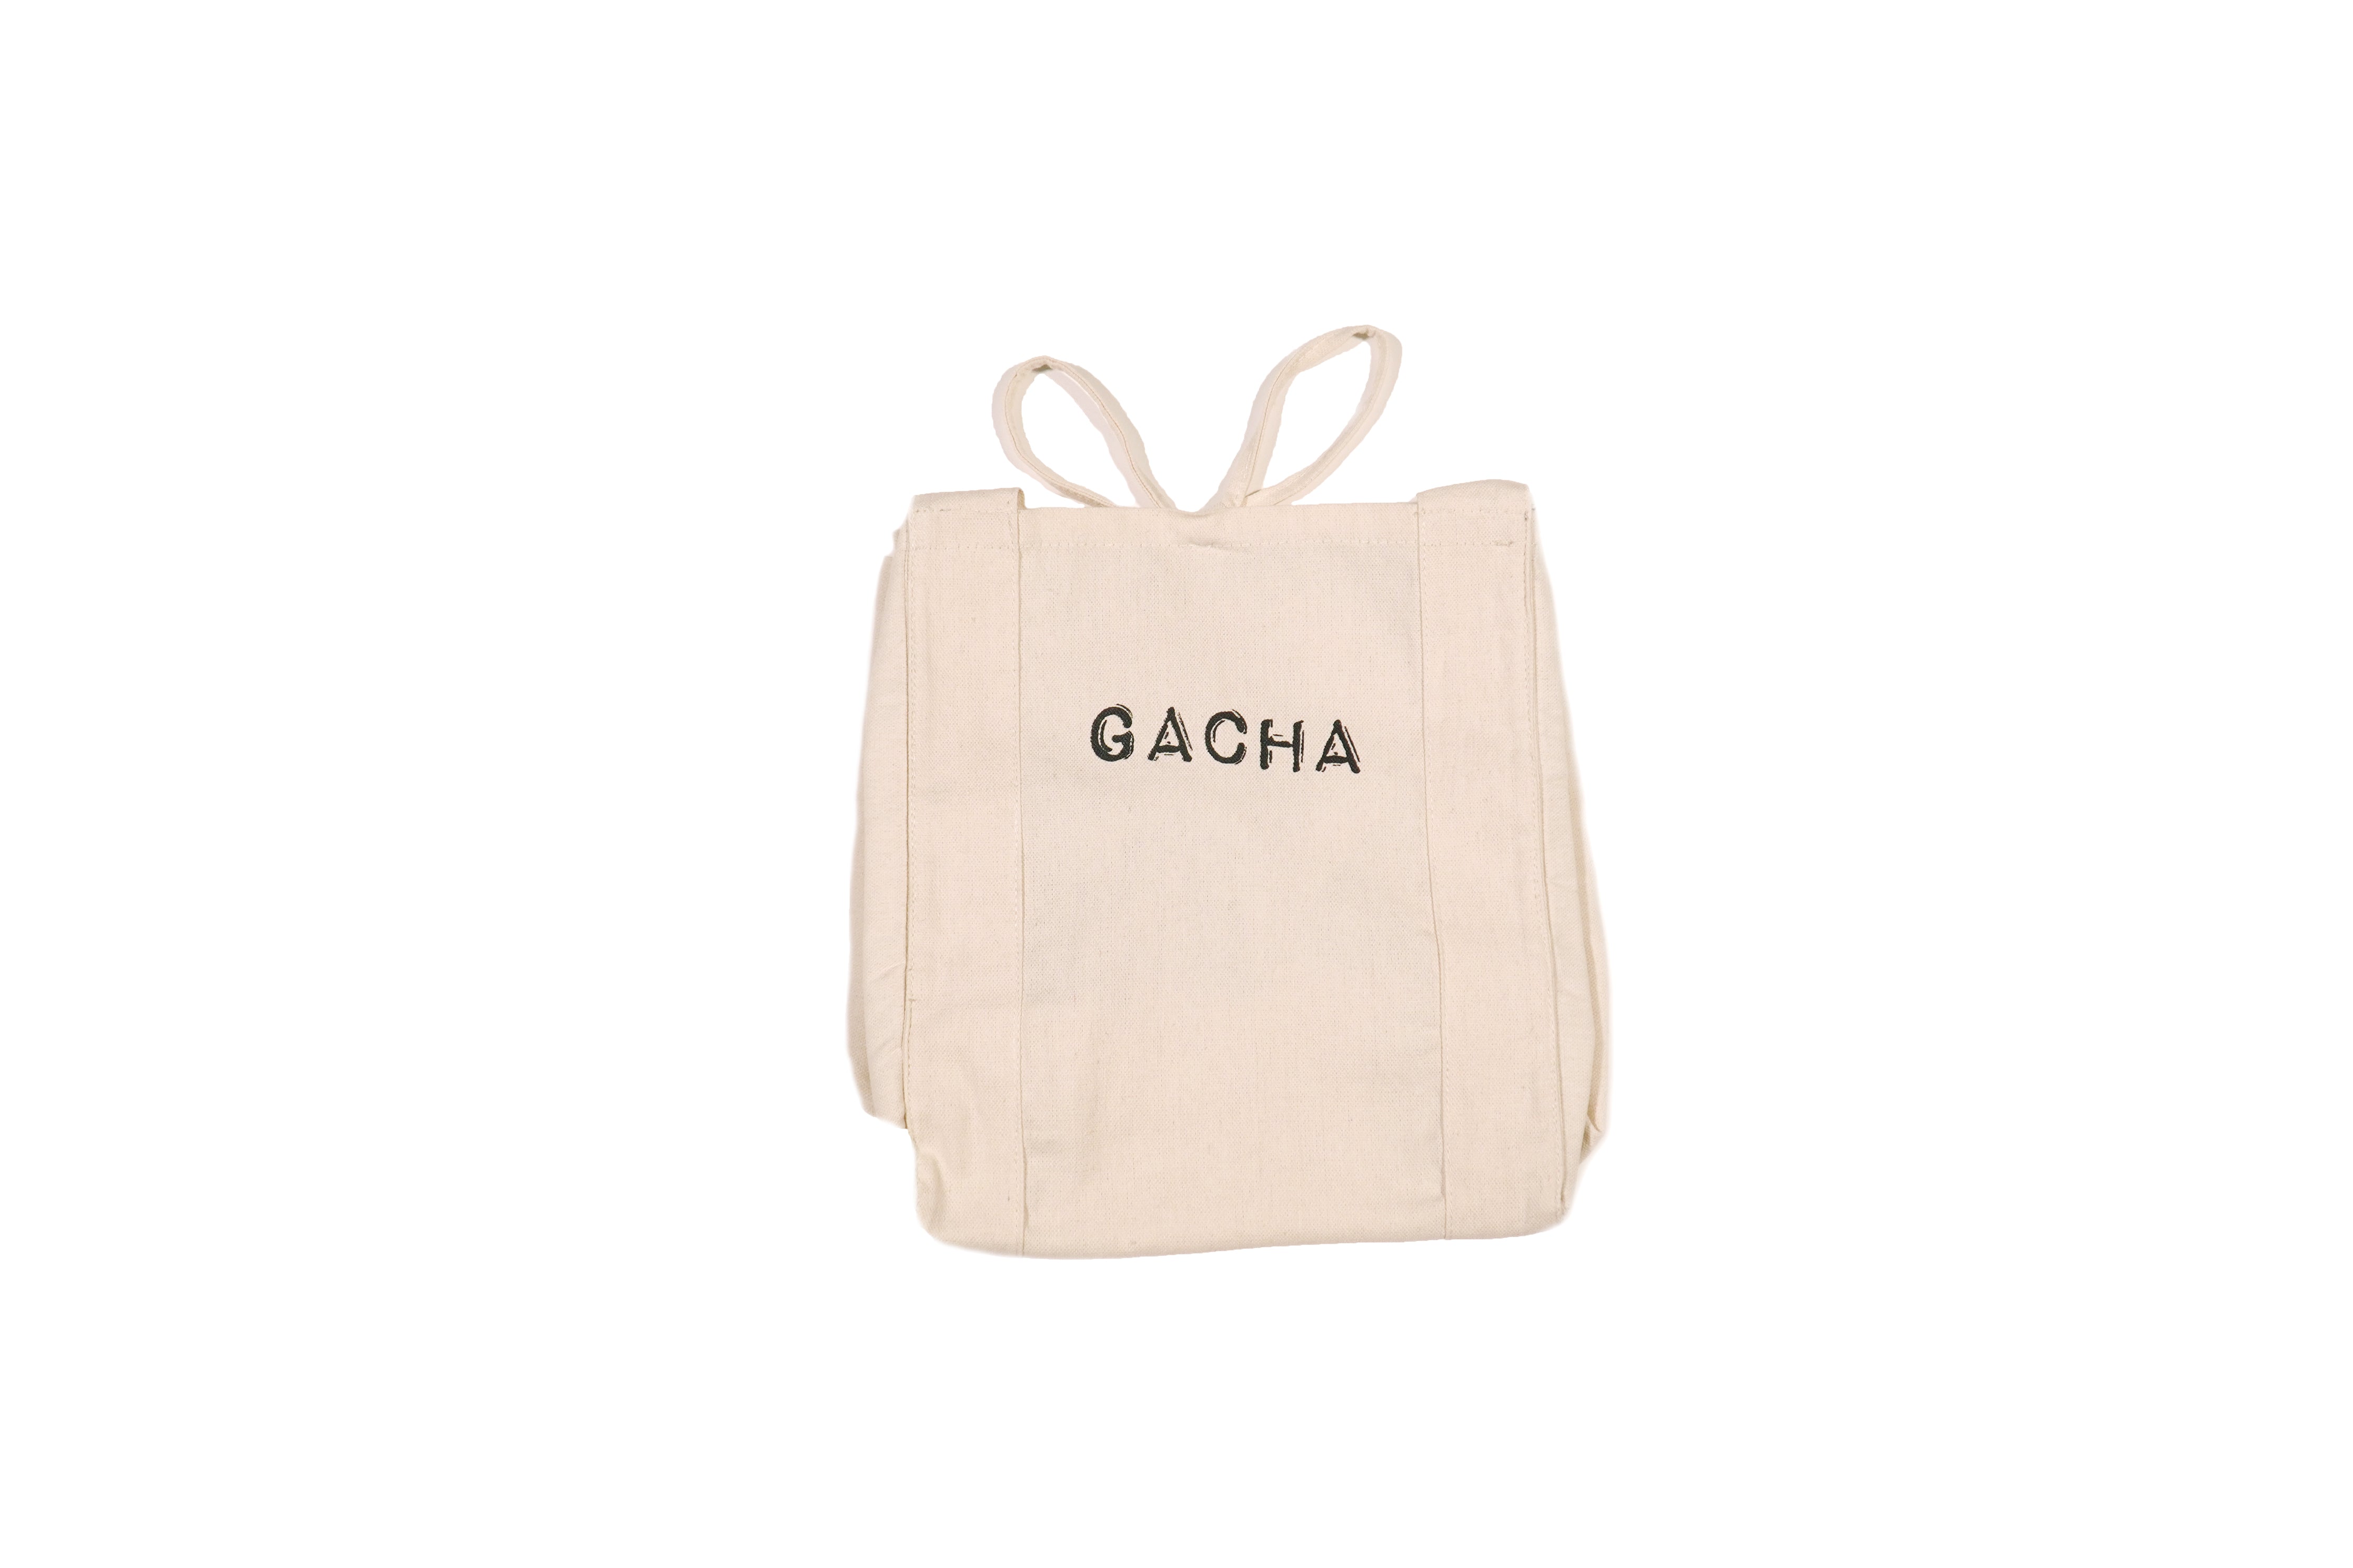 MEDIUM Shopping Sustainable Bag